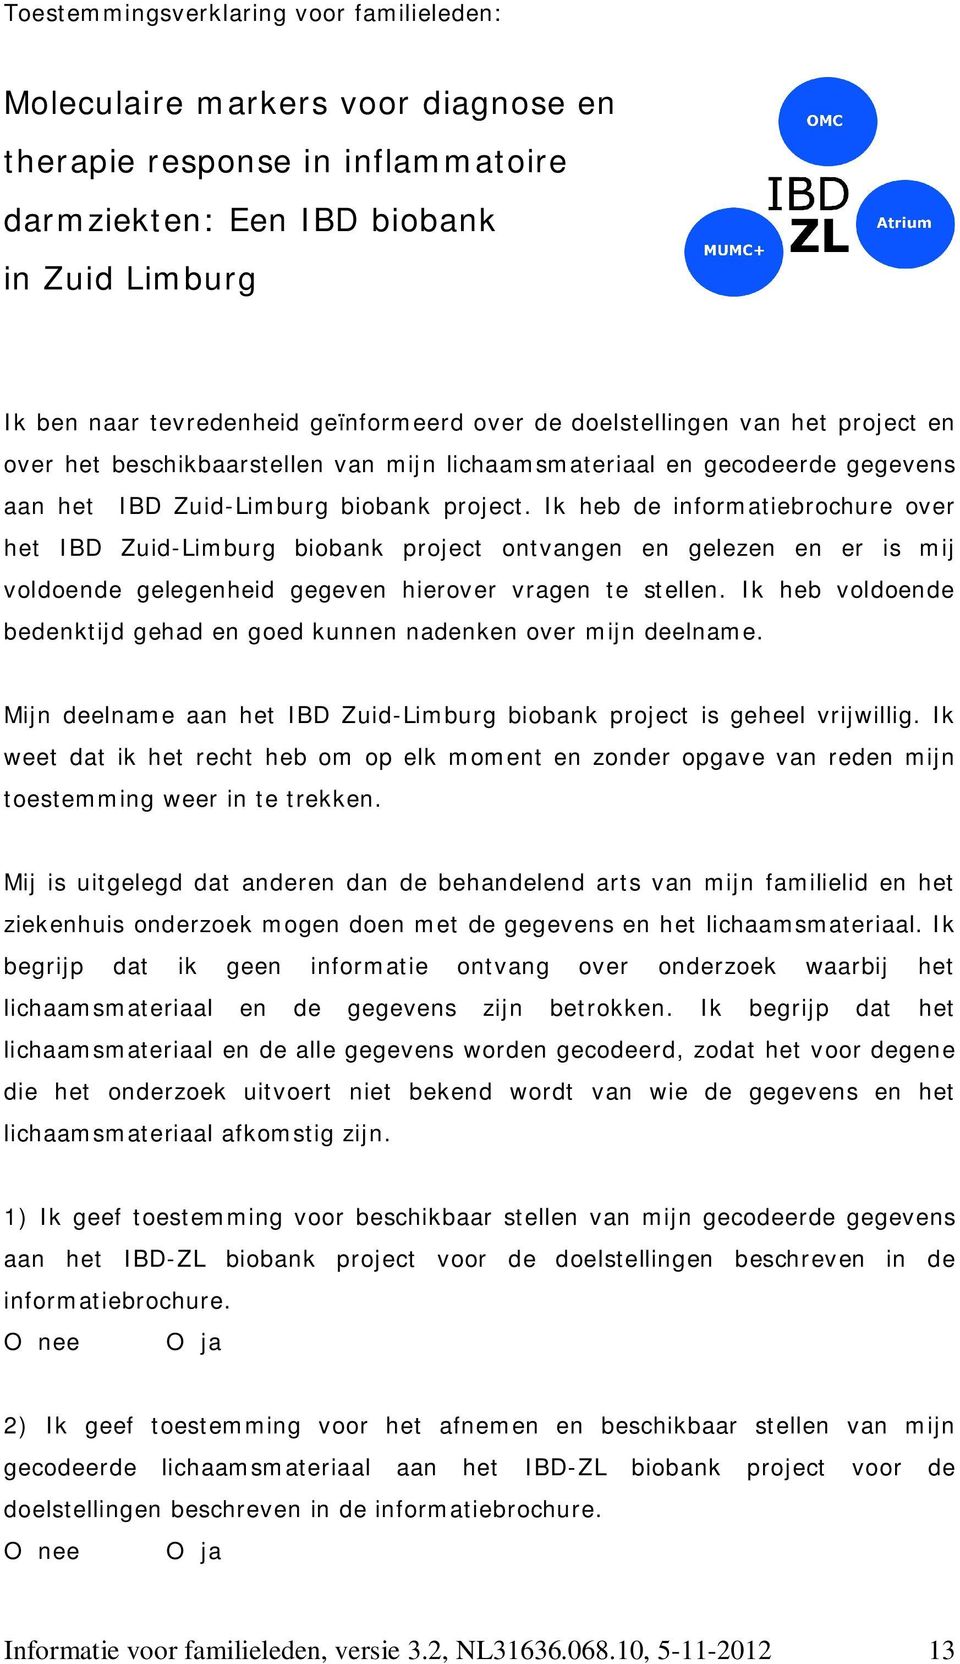 Ik heb de informatiebrochure over het IBD Zuid-Limburg biobank project ontvangen en gelezen en er is mij voldoende gelegenheid gegeven hierover vragen te stellen.